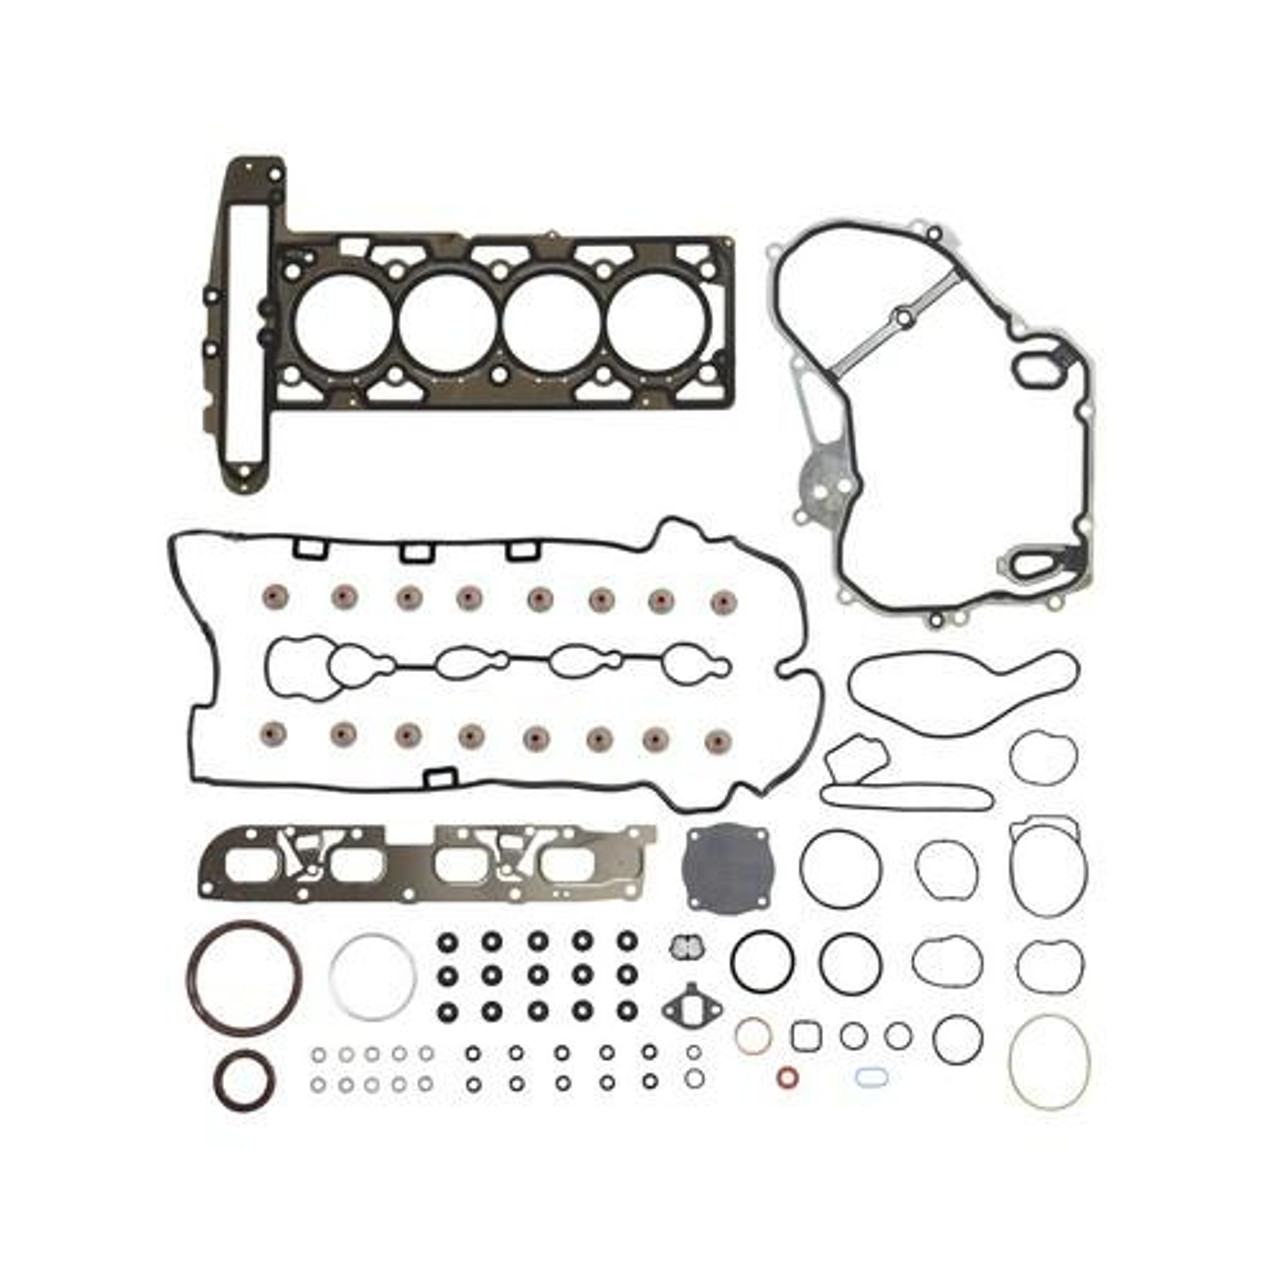 Full Gasket Set - 2013 Buick LaCrosse 2.4L Engine Parts # FGS4233ZE4